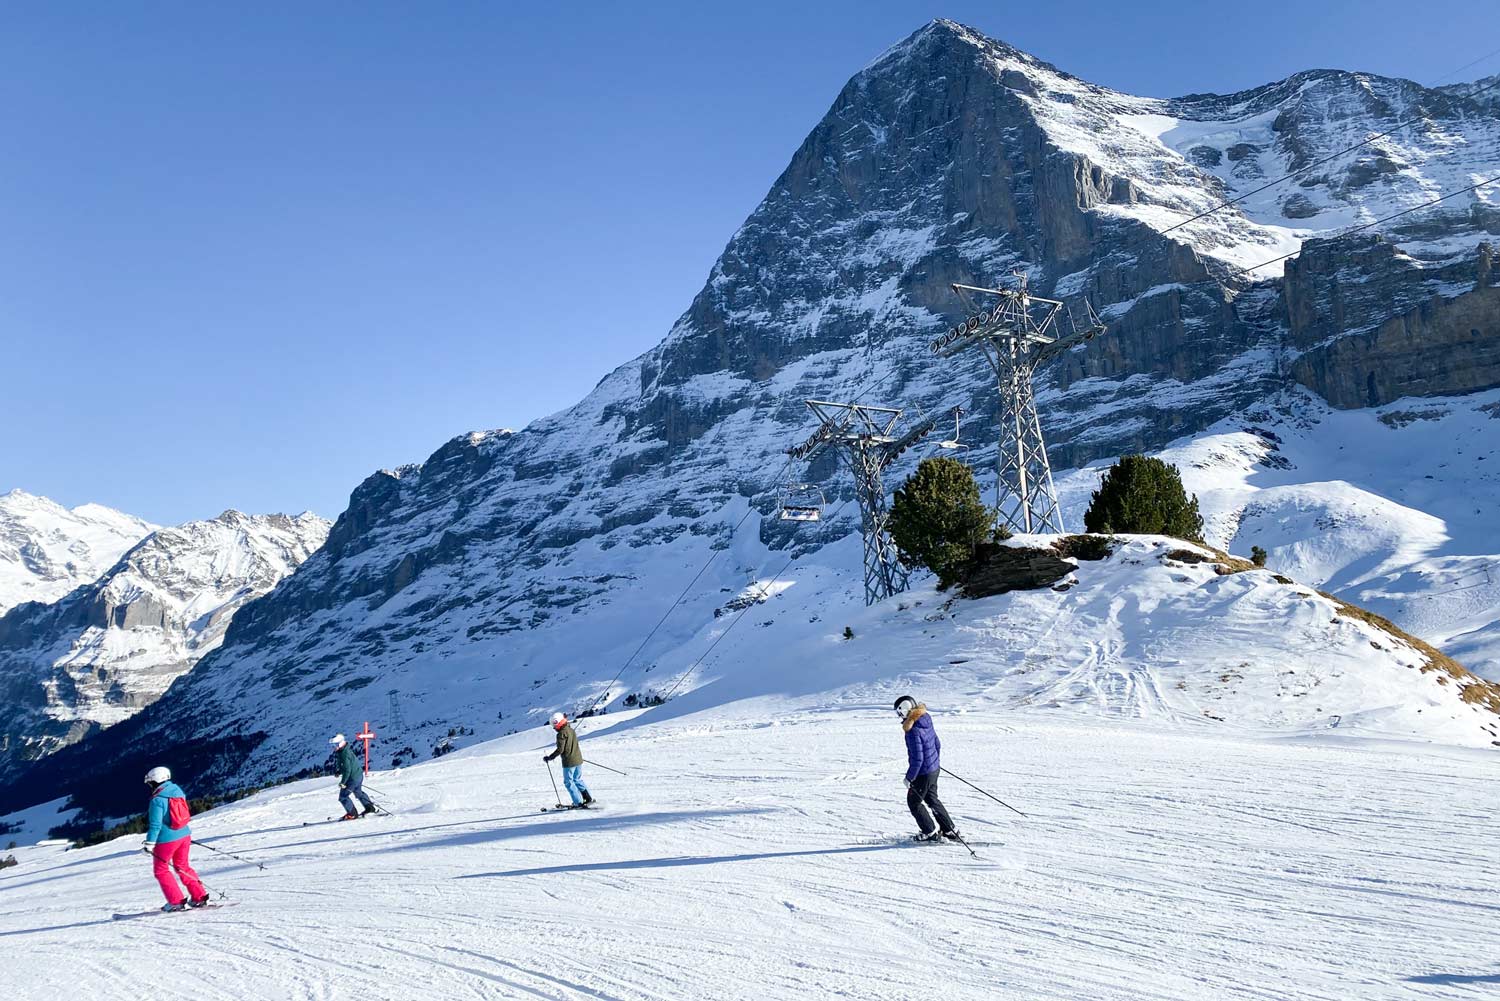 Jungfrau Region skigebied dichtbij Nederland op minder dan 900 km rijden vanaf Utrecht